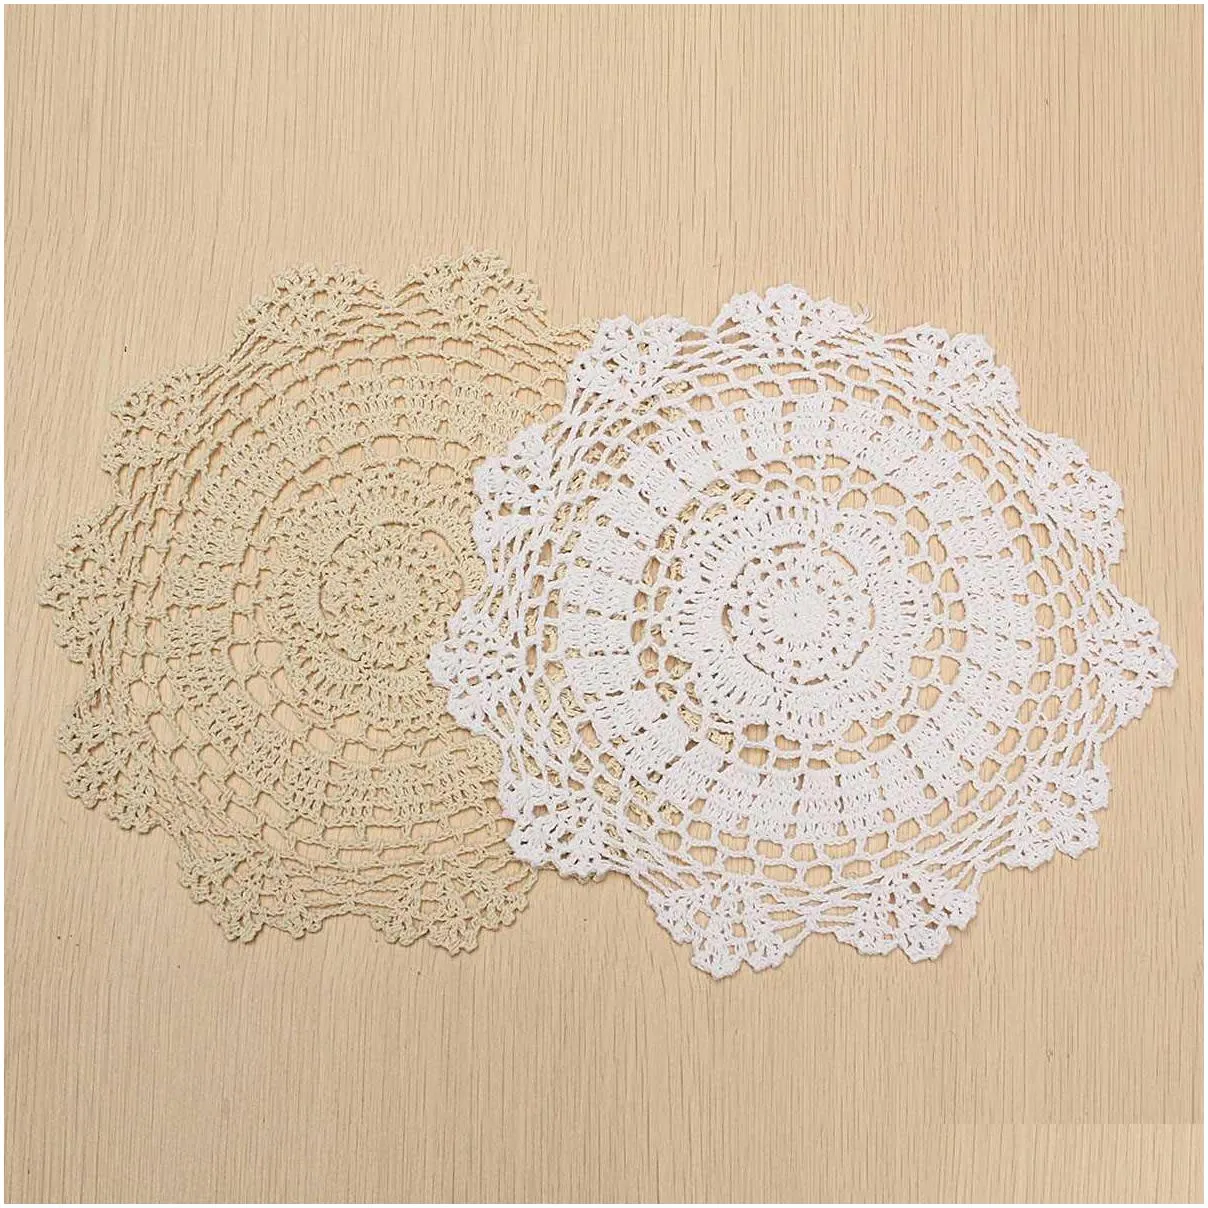 mats pads wholesale 2 colors 30cm pastoral round hand crocheted cotton doilies flower shape placemat coasters table decorative gadgets